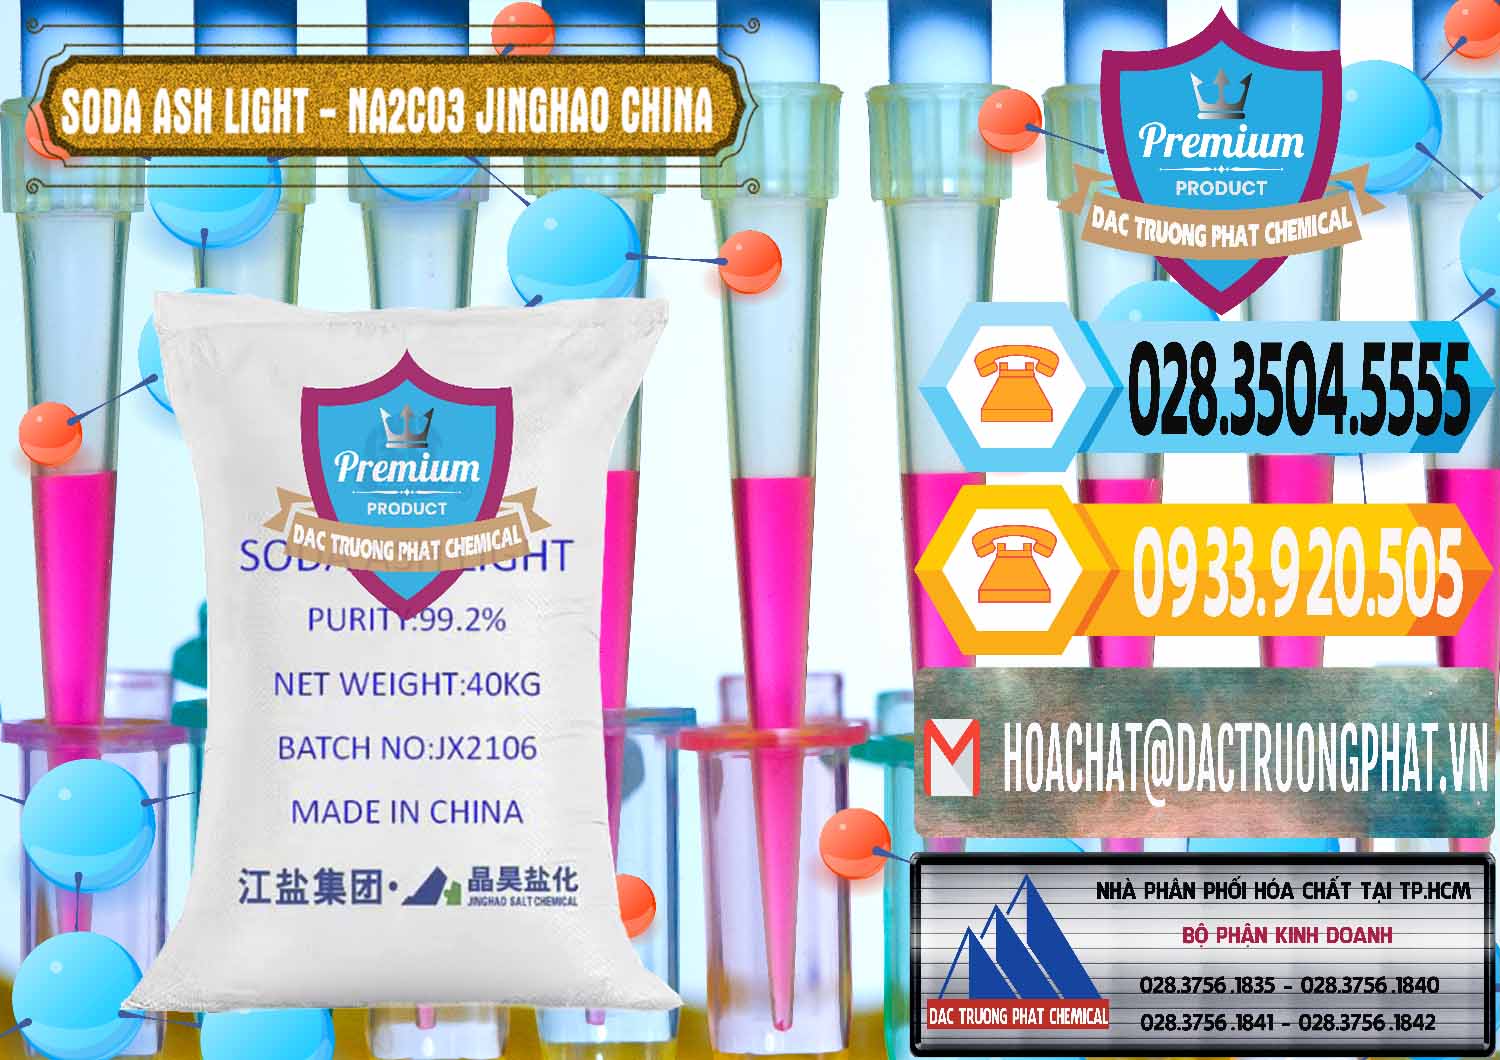 Cty nhập khẩu và bán Soda Ash Light - NA2CO3 Jinghao Trung Quốc China - 0339 - Nơi chuyên cung cấp và kinh doanh hóa chất tại TP.HCM - hoachattayrua.net